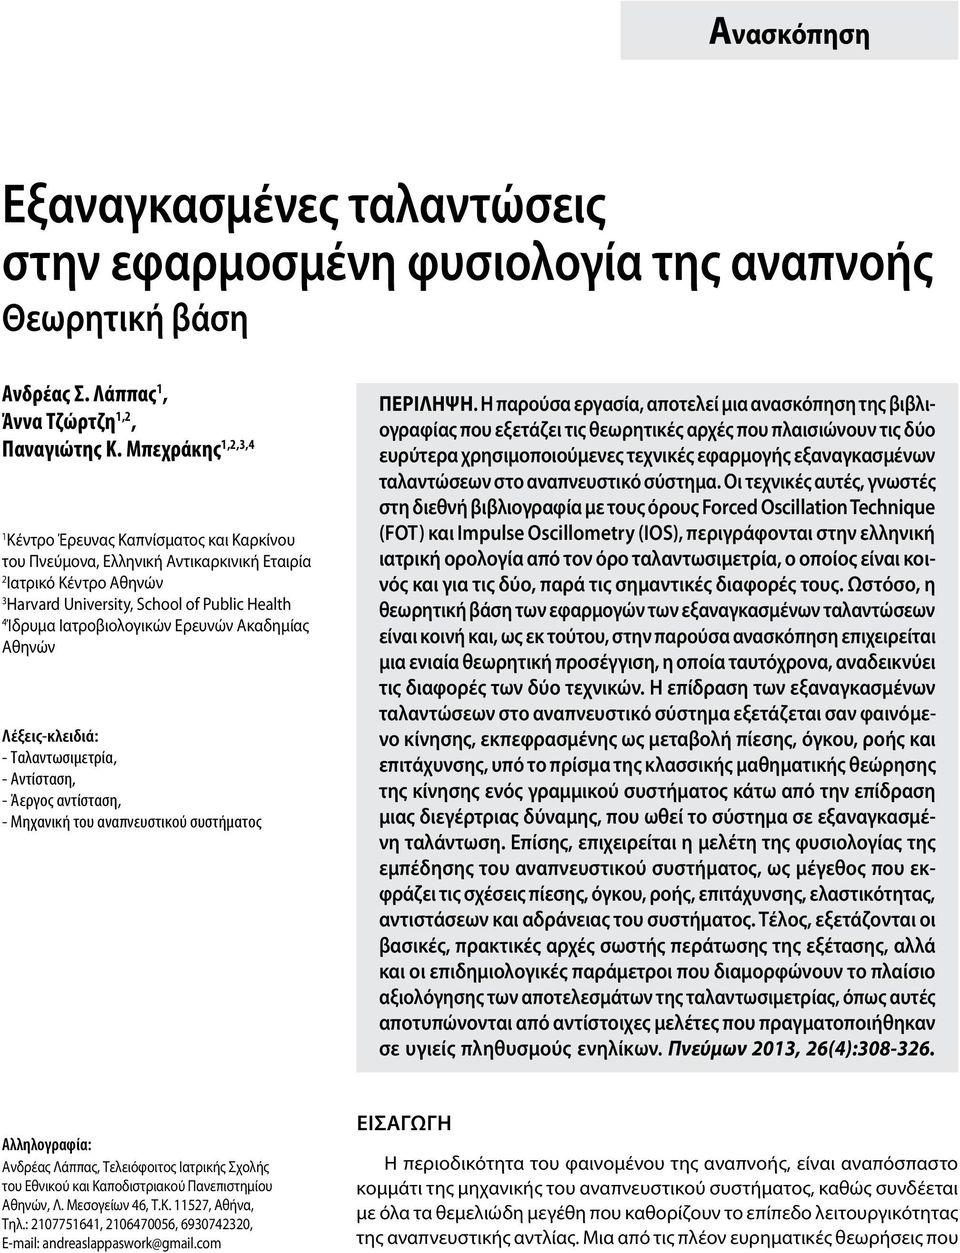 Ερευνών Ακαδημίας Αθηνών Λέξεις-κλειδιά: - Ταλαντωσιμετρία, - Αντίσταση, - Άεργος αντίσταση, - Μηχανική του αναπνευστικού συστήματος Περiληψη.